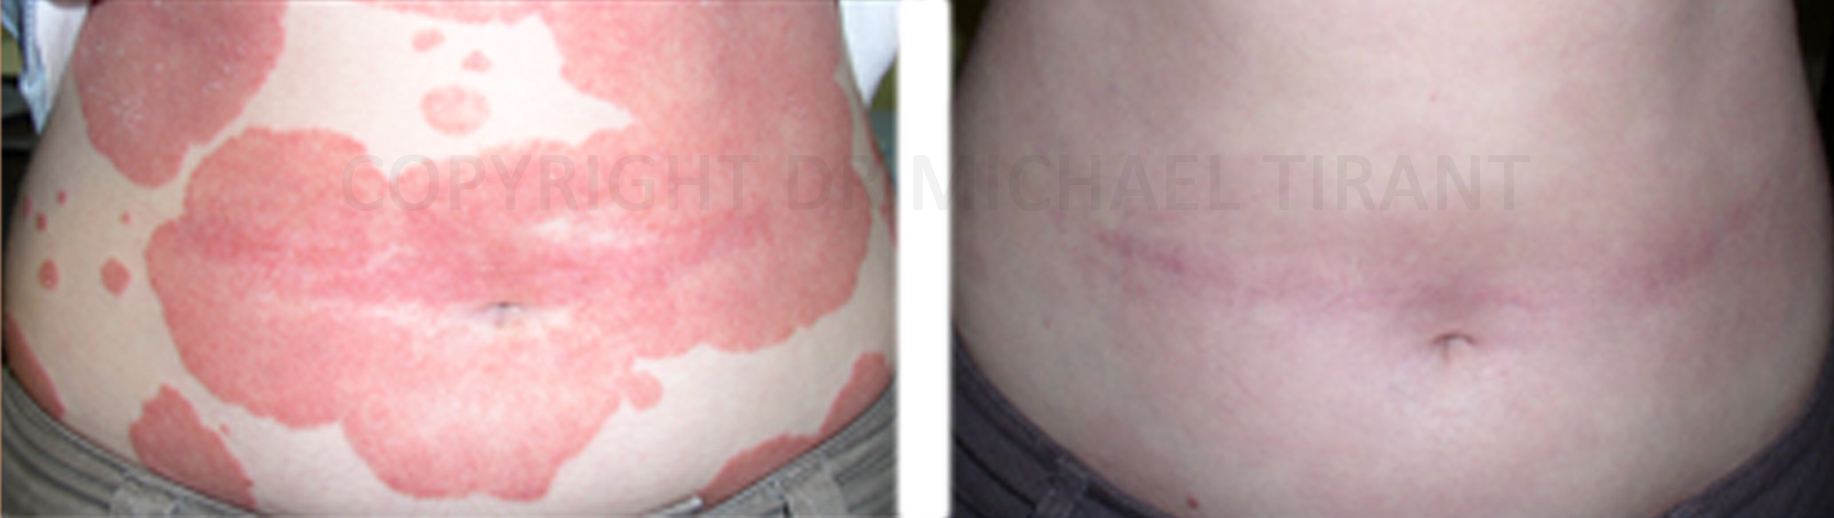 Łuszczyca na plecach - przed i po leczeniu preparatami Dr Michaels